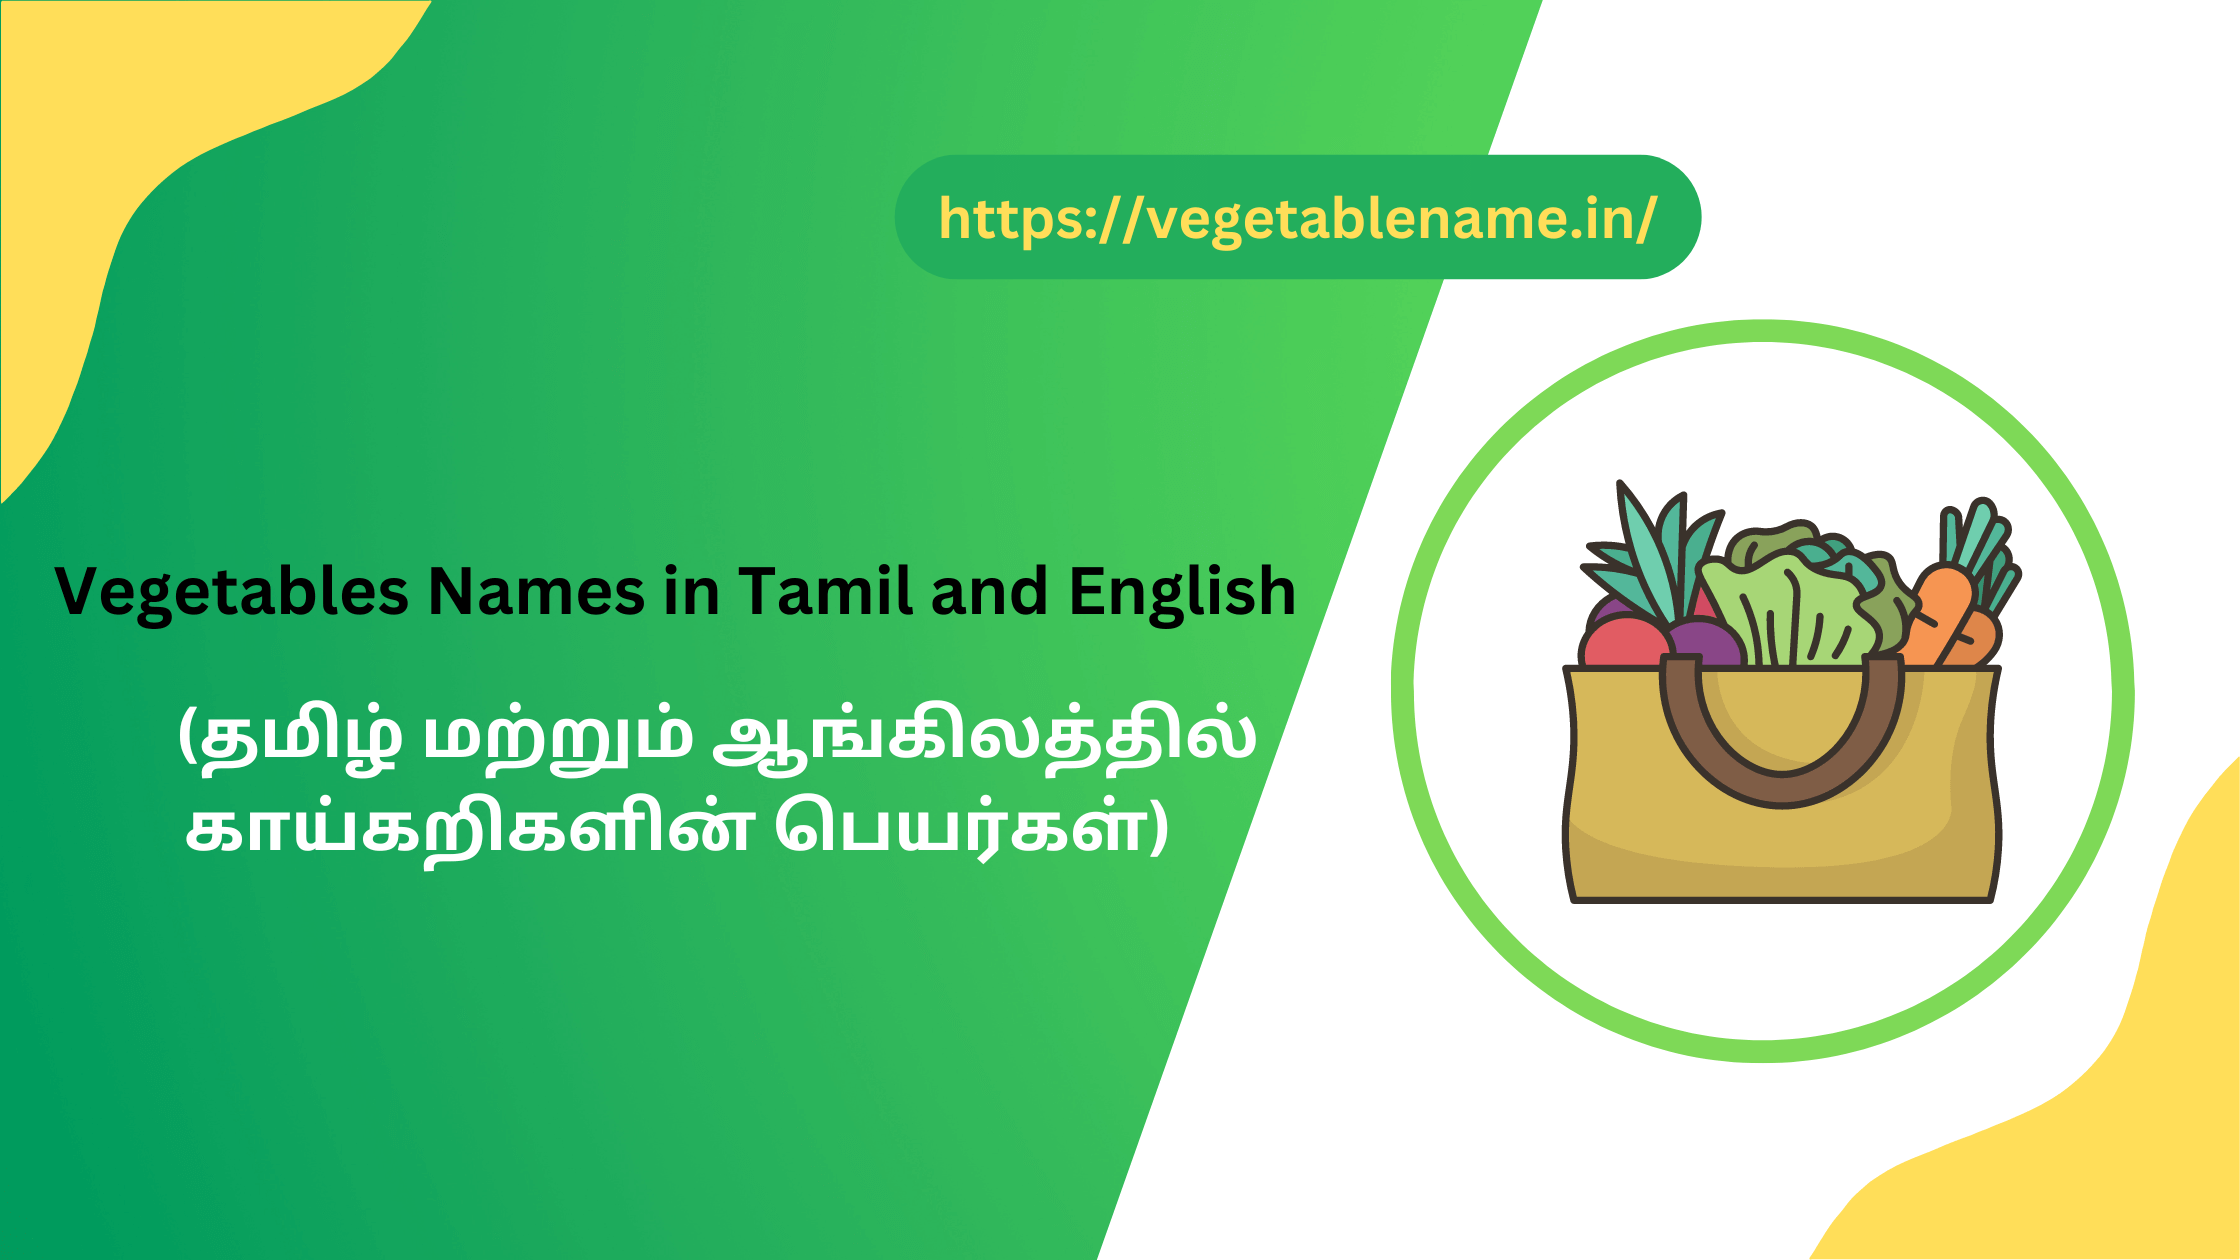 Vegetables Names in Tamil